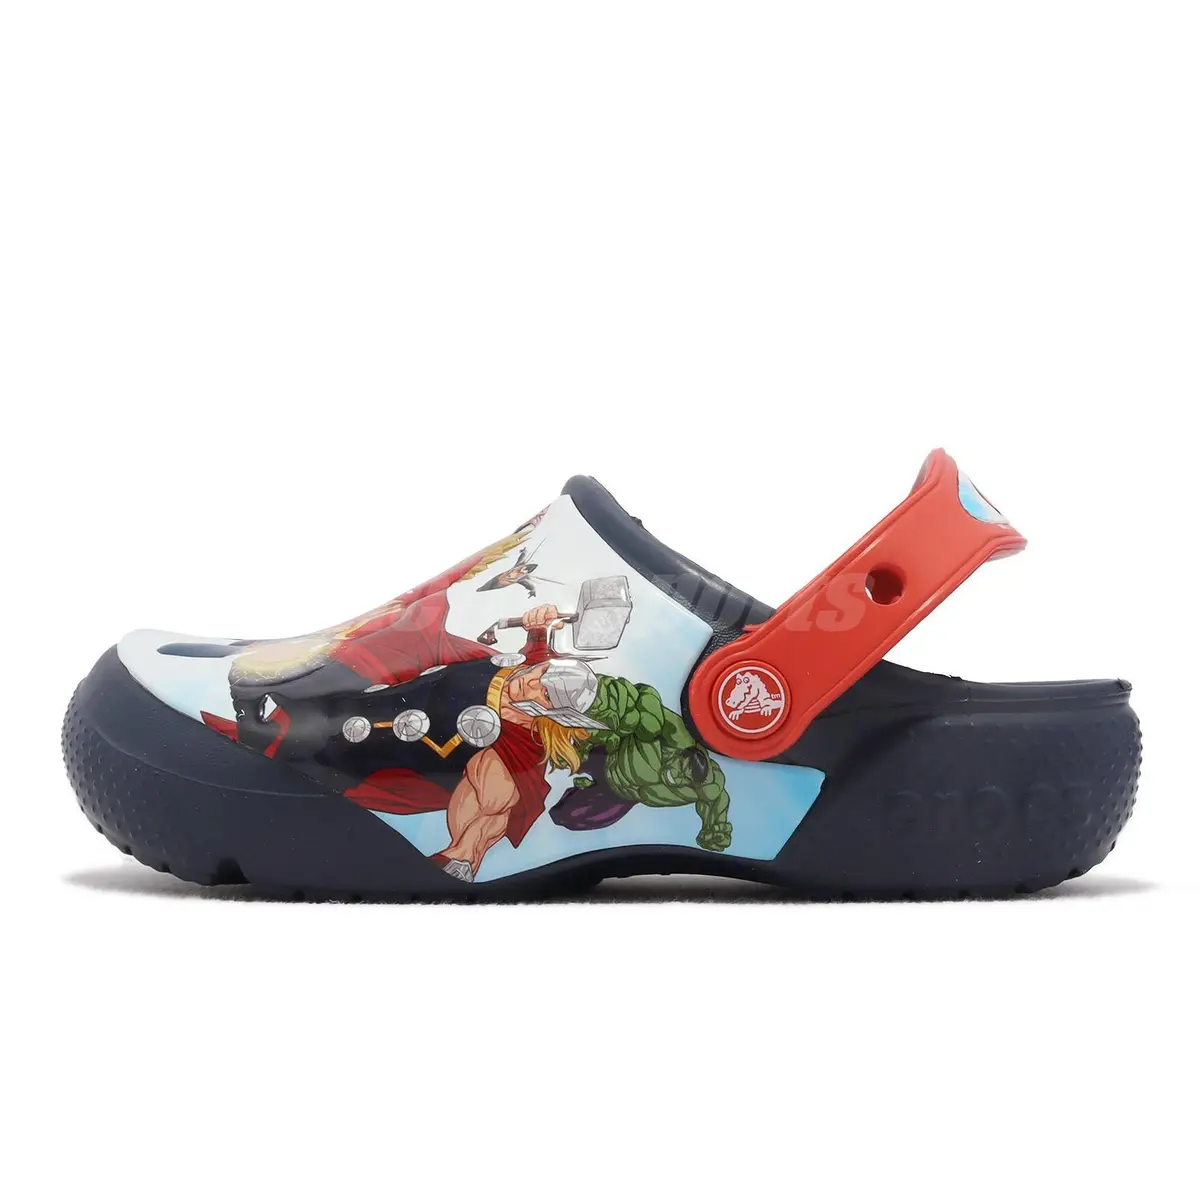 Hochwertige Neuerscheinungen Crocs Fun Lab Navy 207069-410 Patch Shoes Avengers Preschool Sandals Kids eBay K Clog 